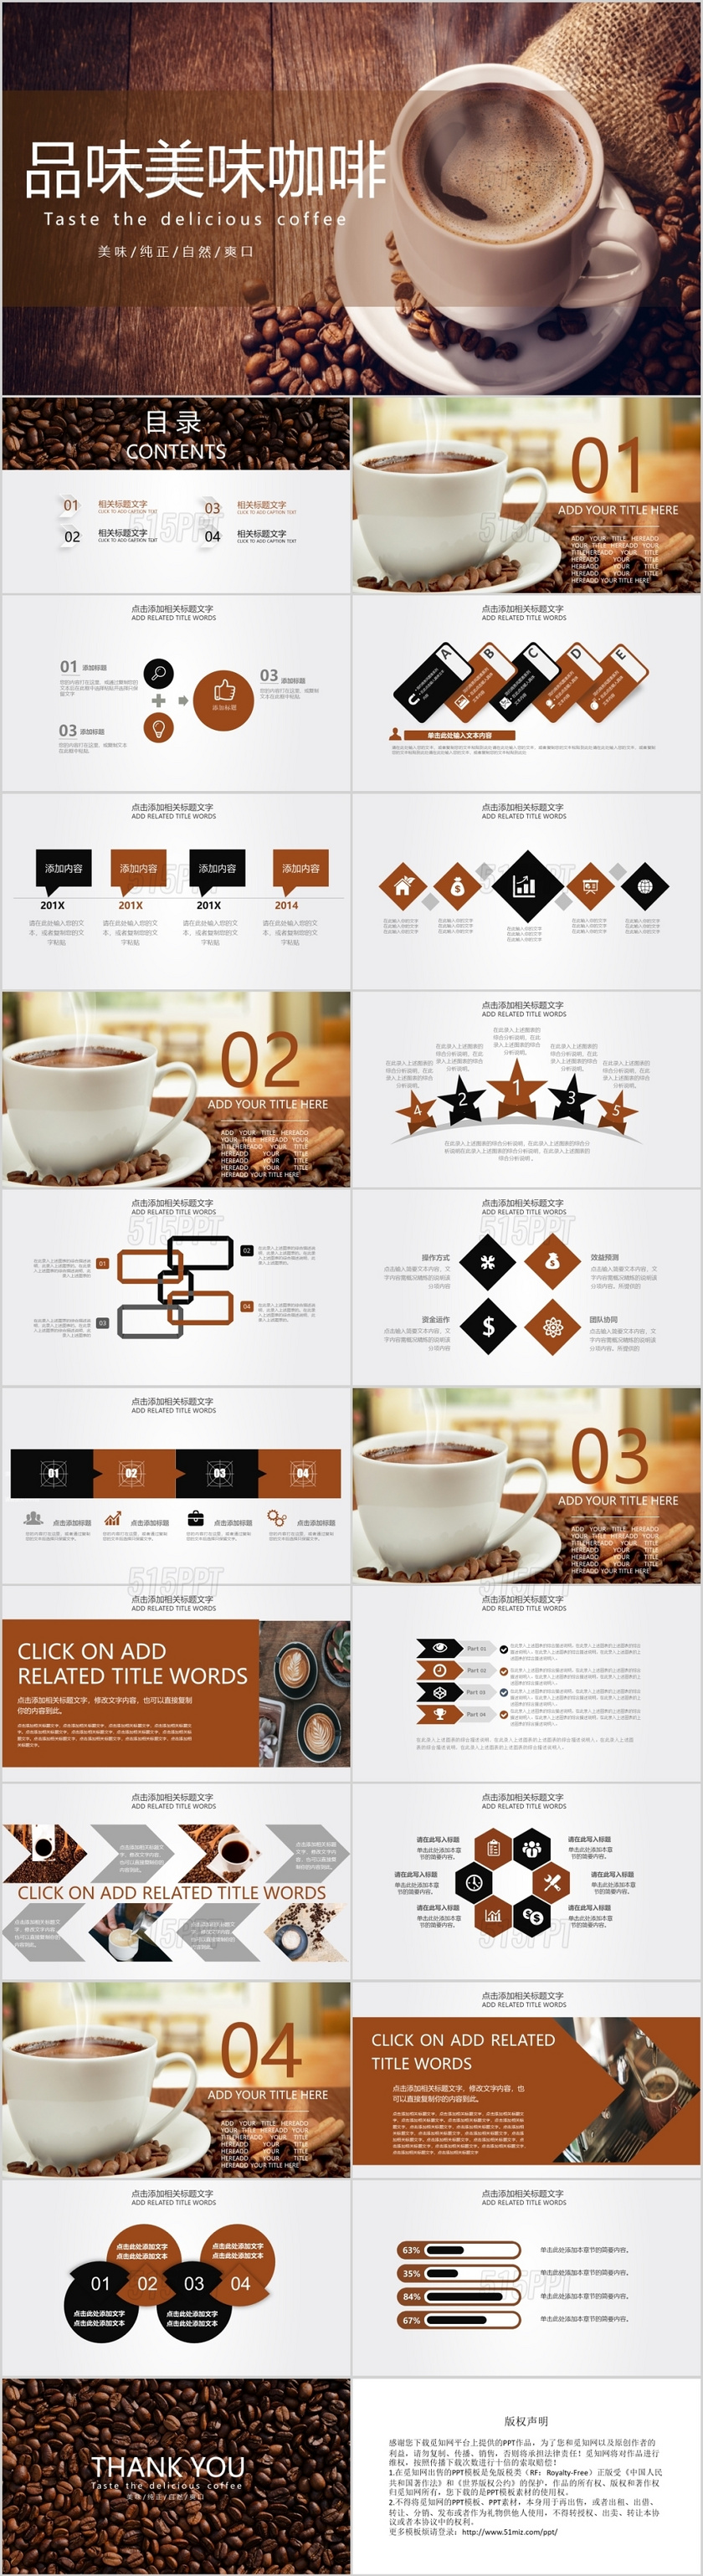 简约唯美大方品味美味咖啡咖啡介绍咖啡讲解PPT模板